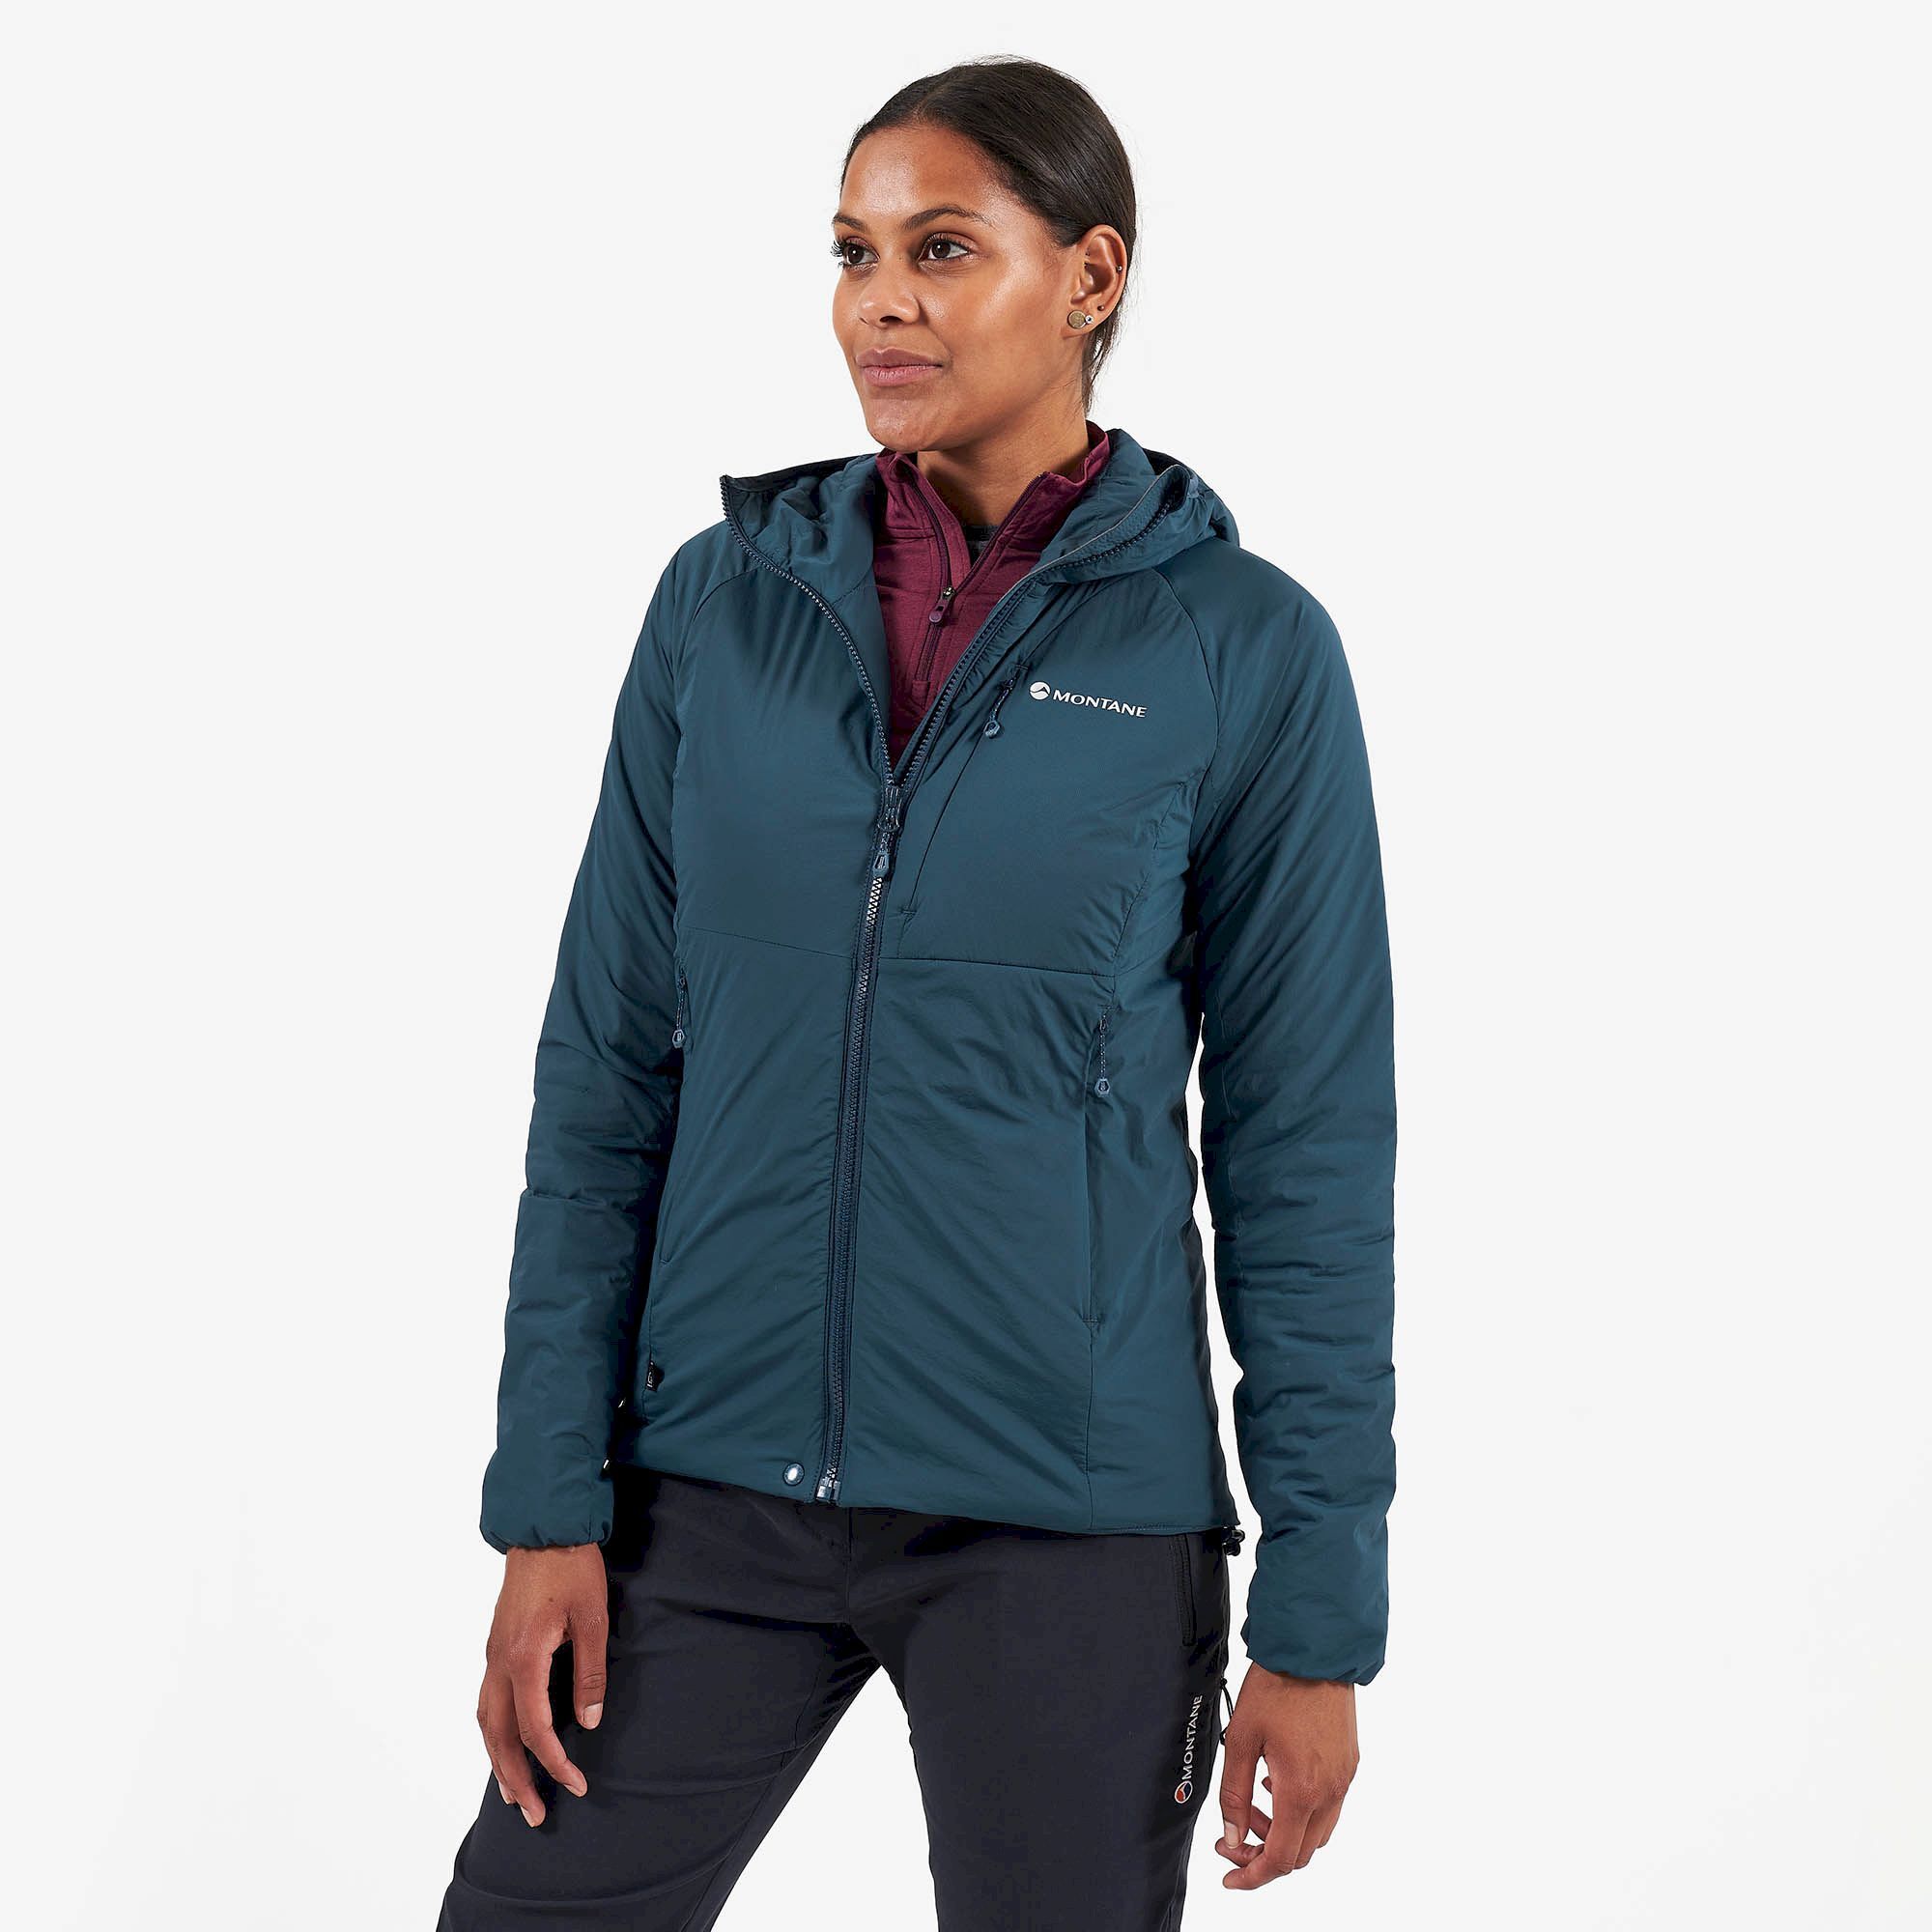 Montane Fireball Jacket - Synthetic jacket - Women's